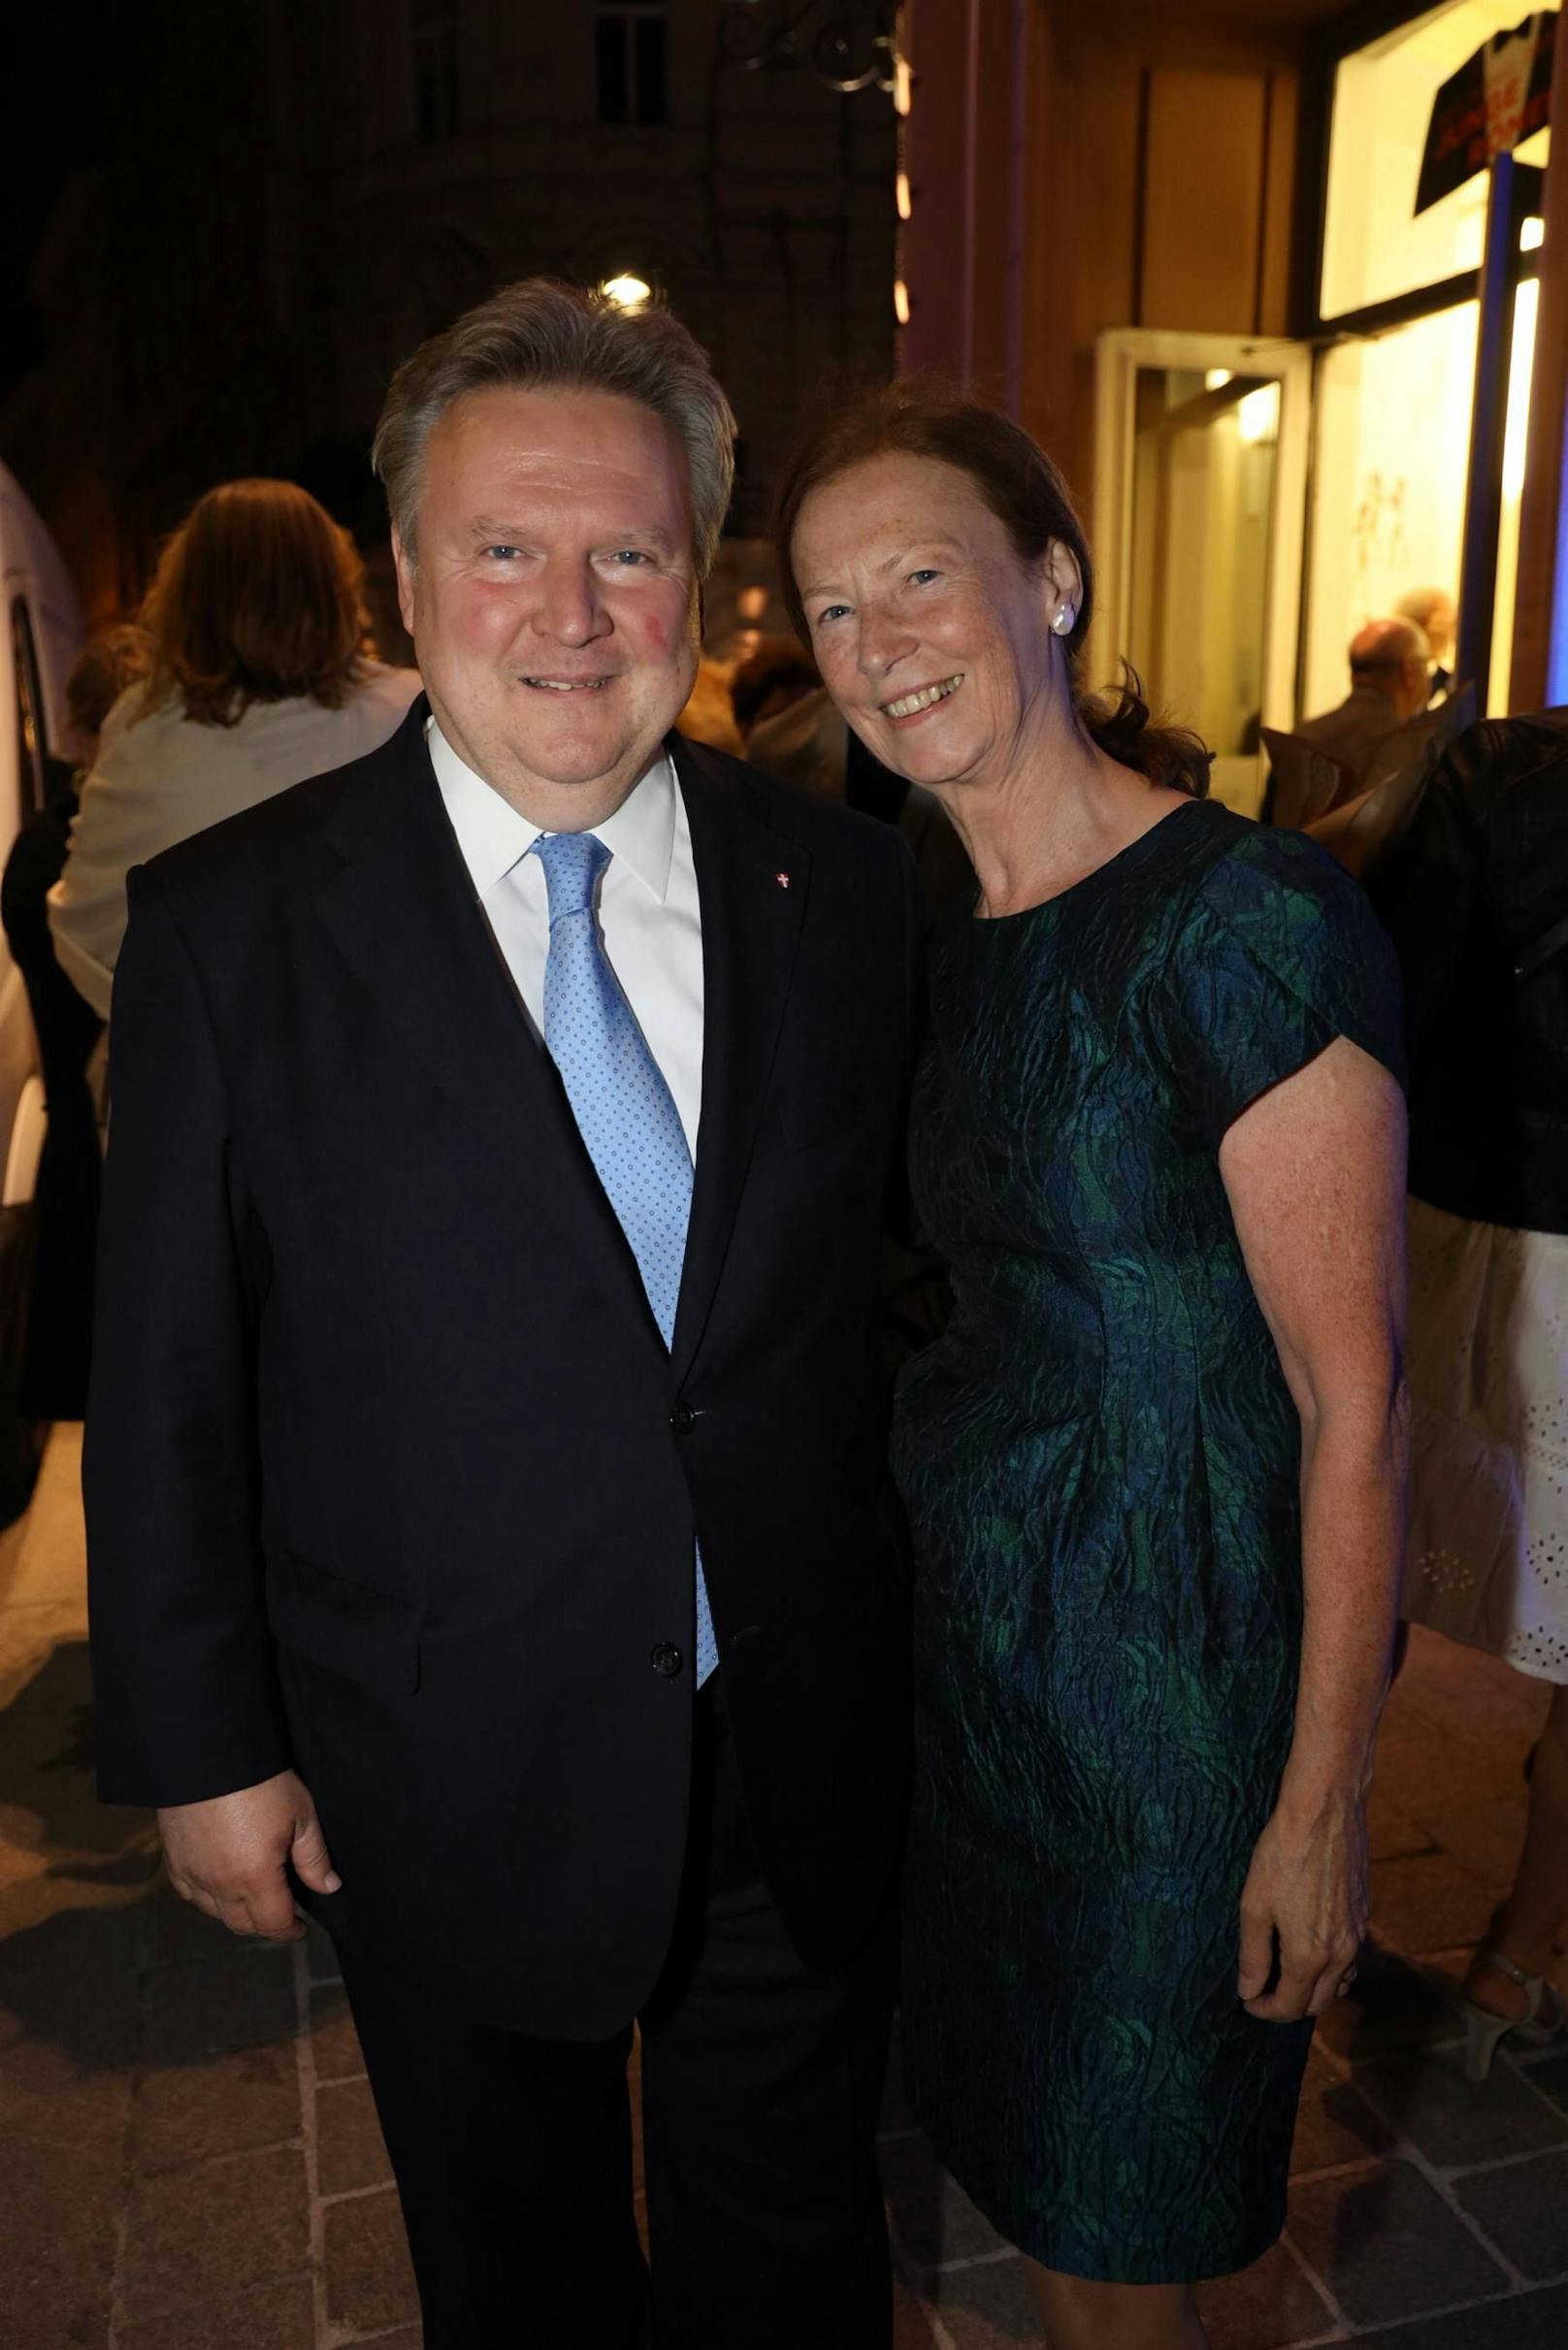 Begeistert von der Musical-Premiere im Wiener Ronacher: Bürgermeister Michael Ludwig mit Ehefrau Irmtraud